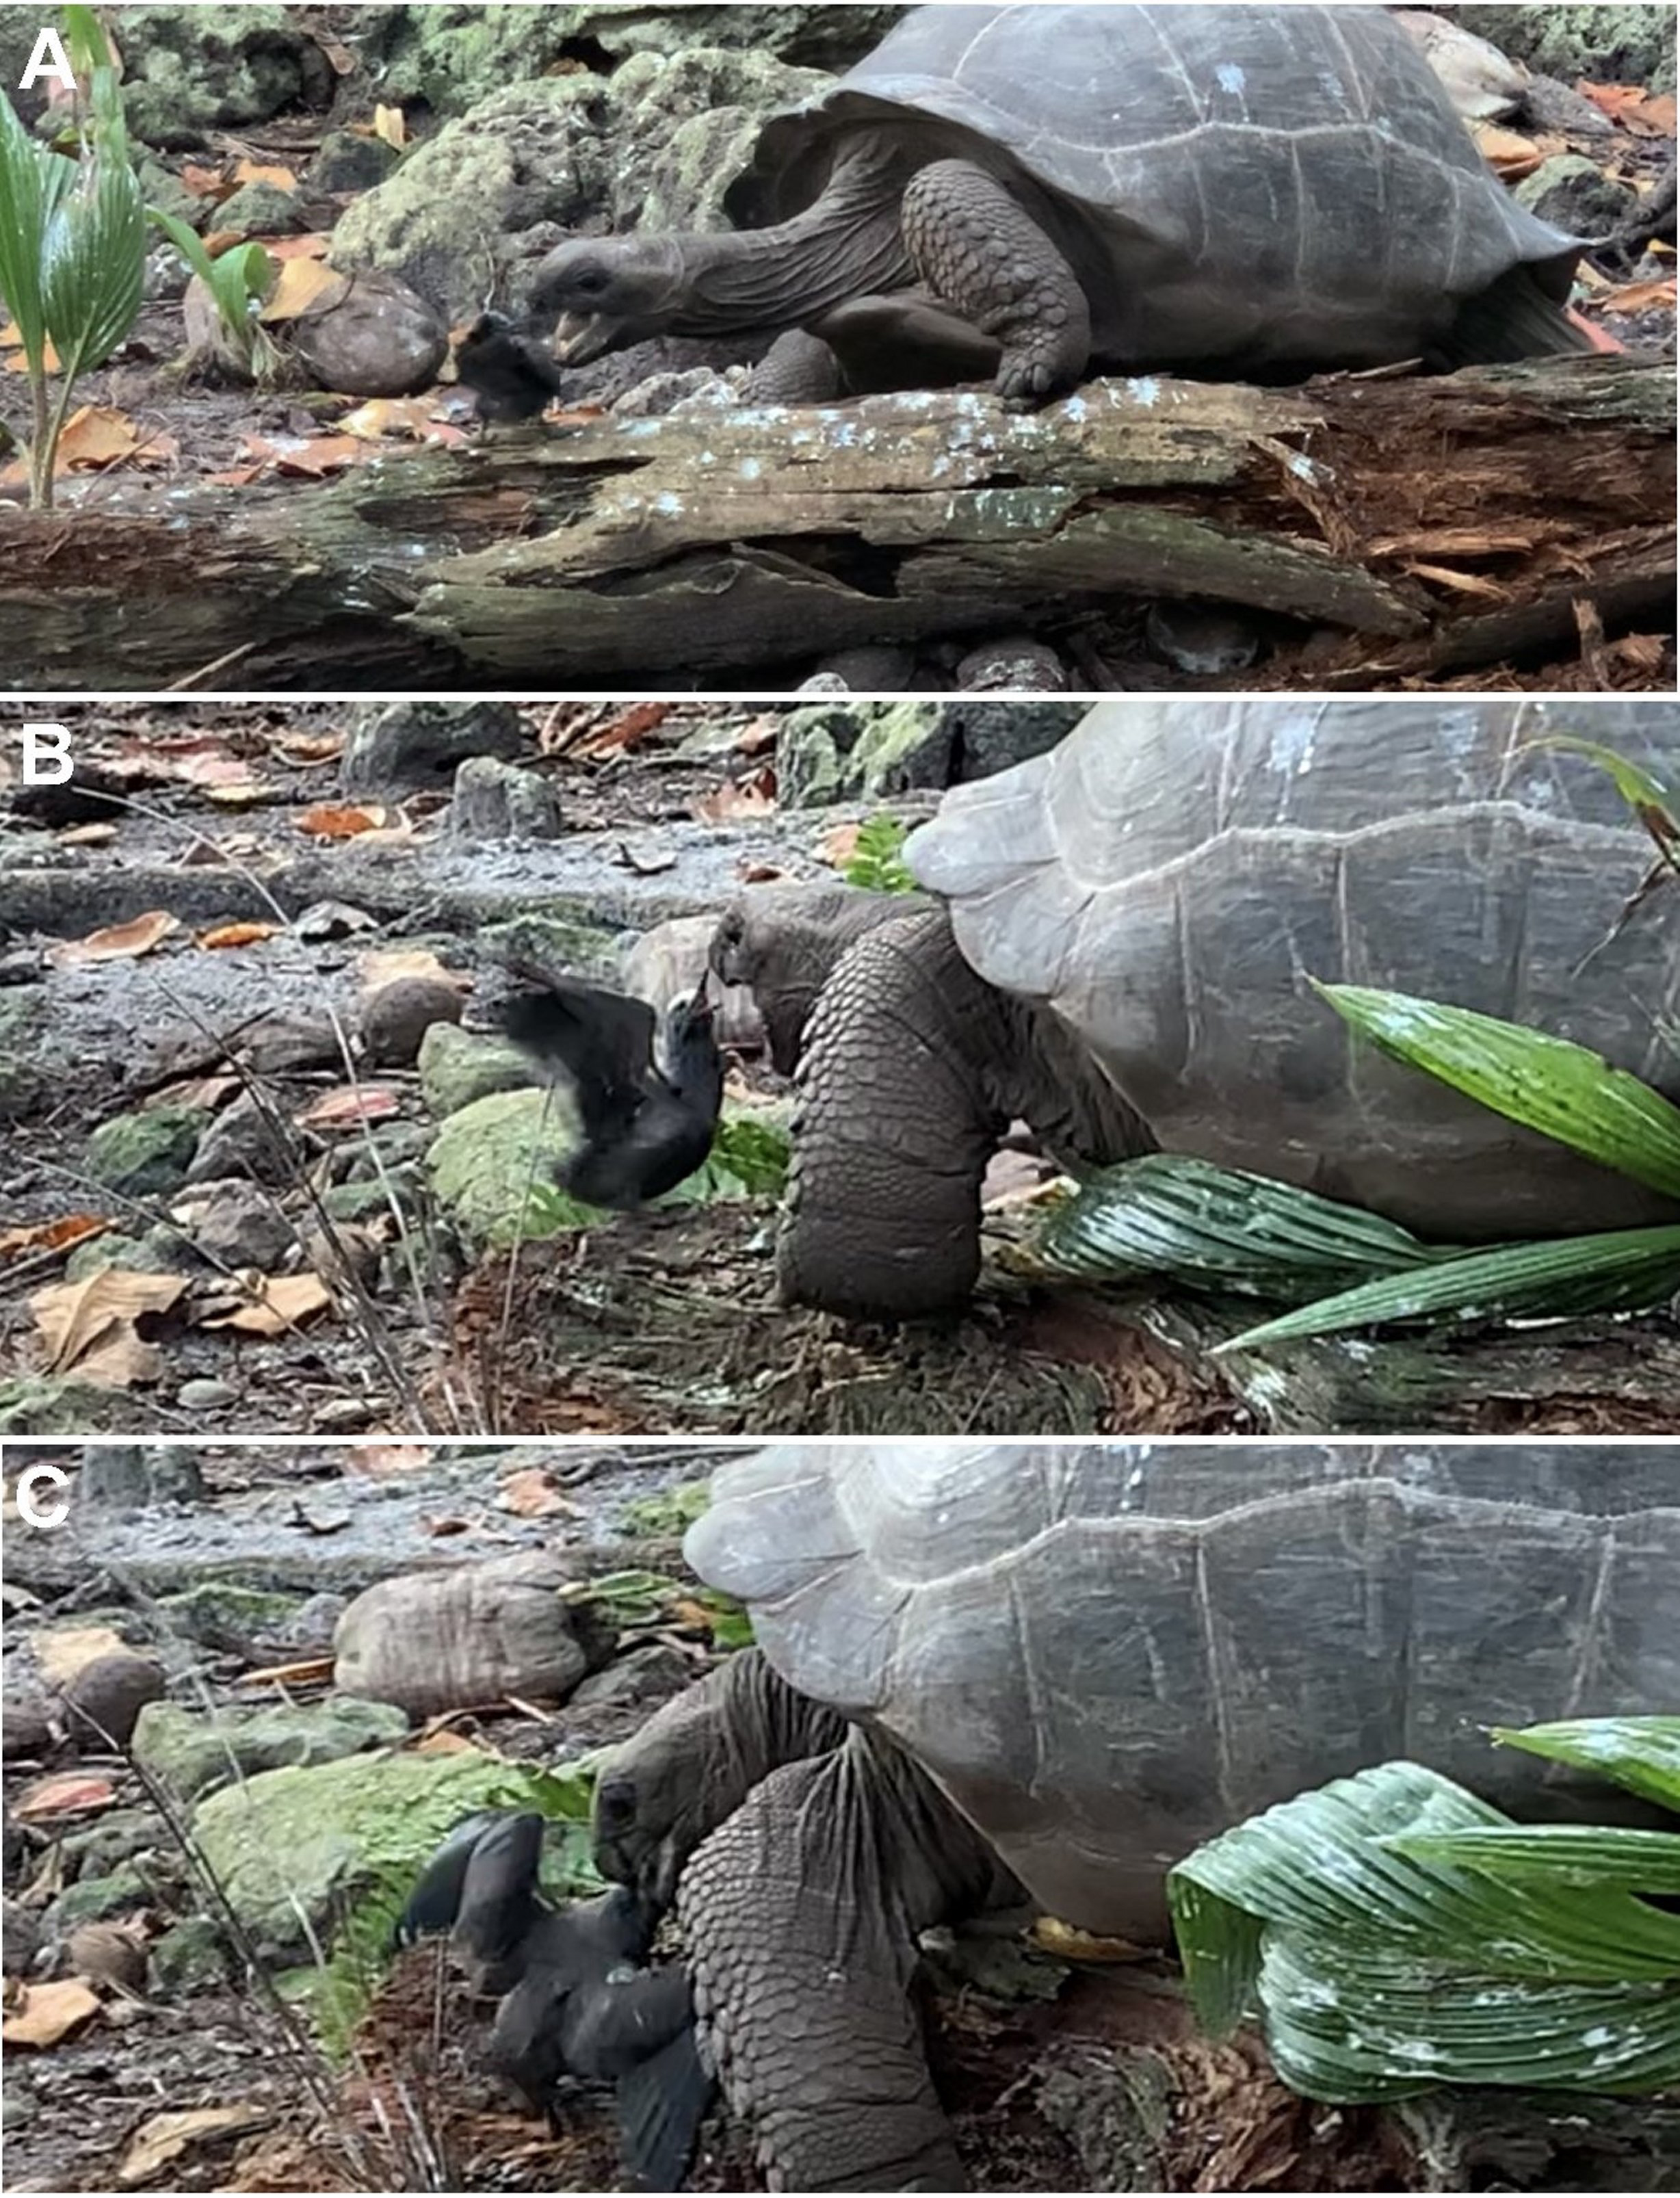 Giant tortoise eating tern chick